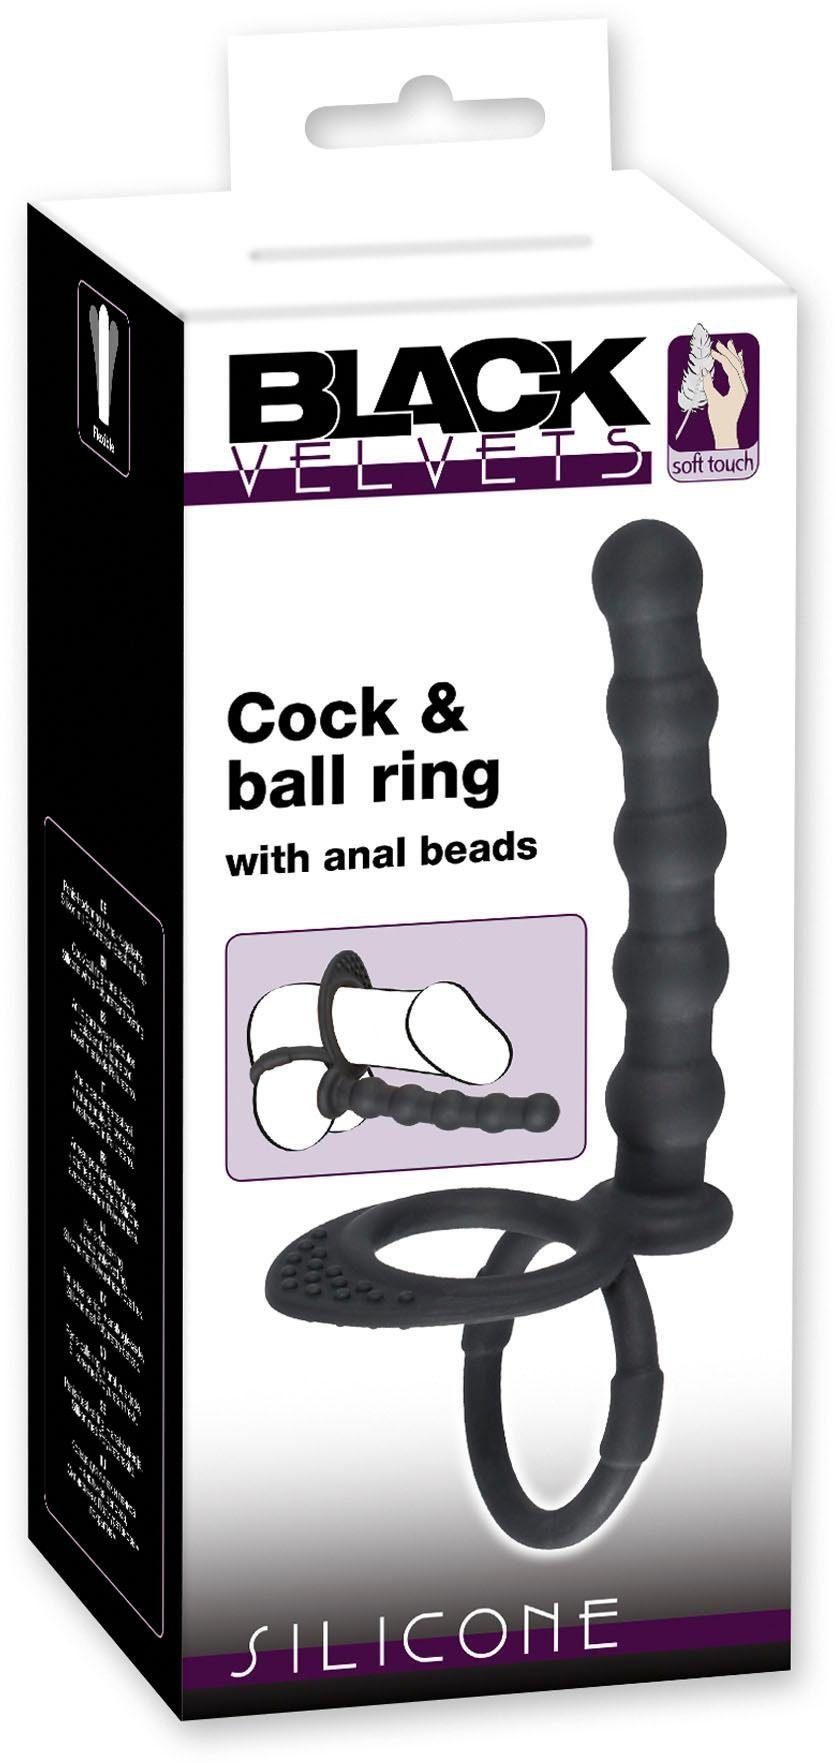 Penis-Hoden-Ring Analdildo mit BLACK Penis-/Hodenring VELVETS